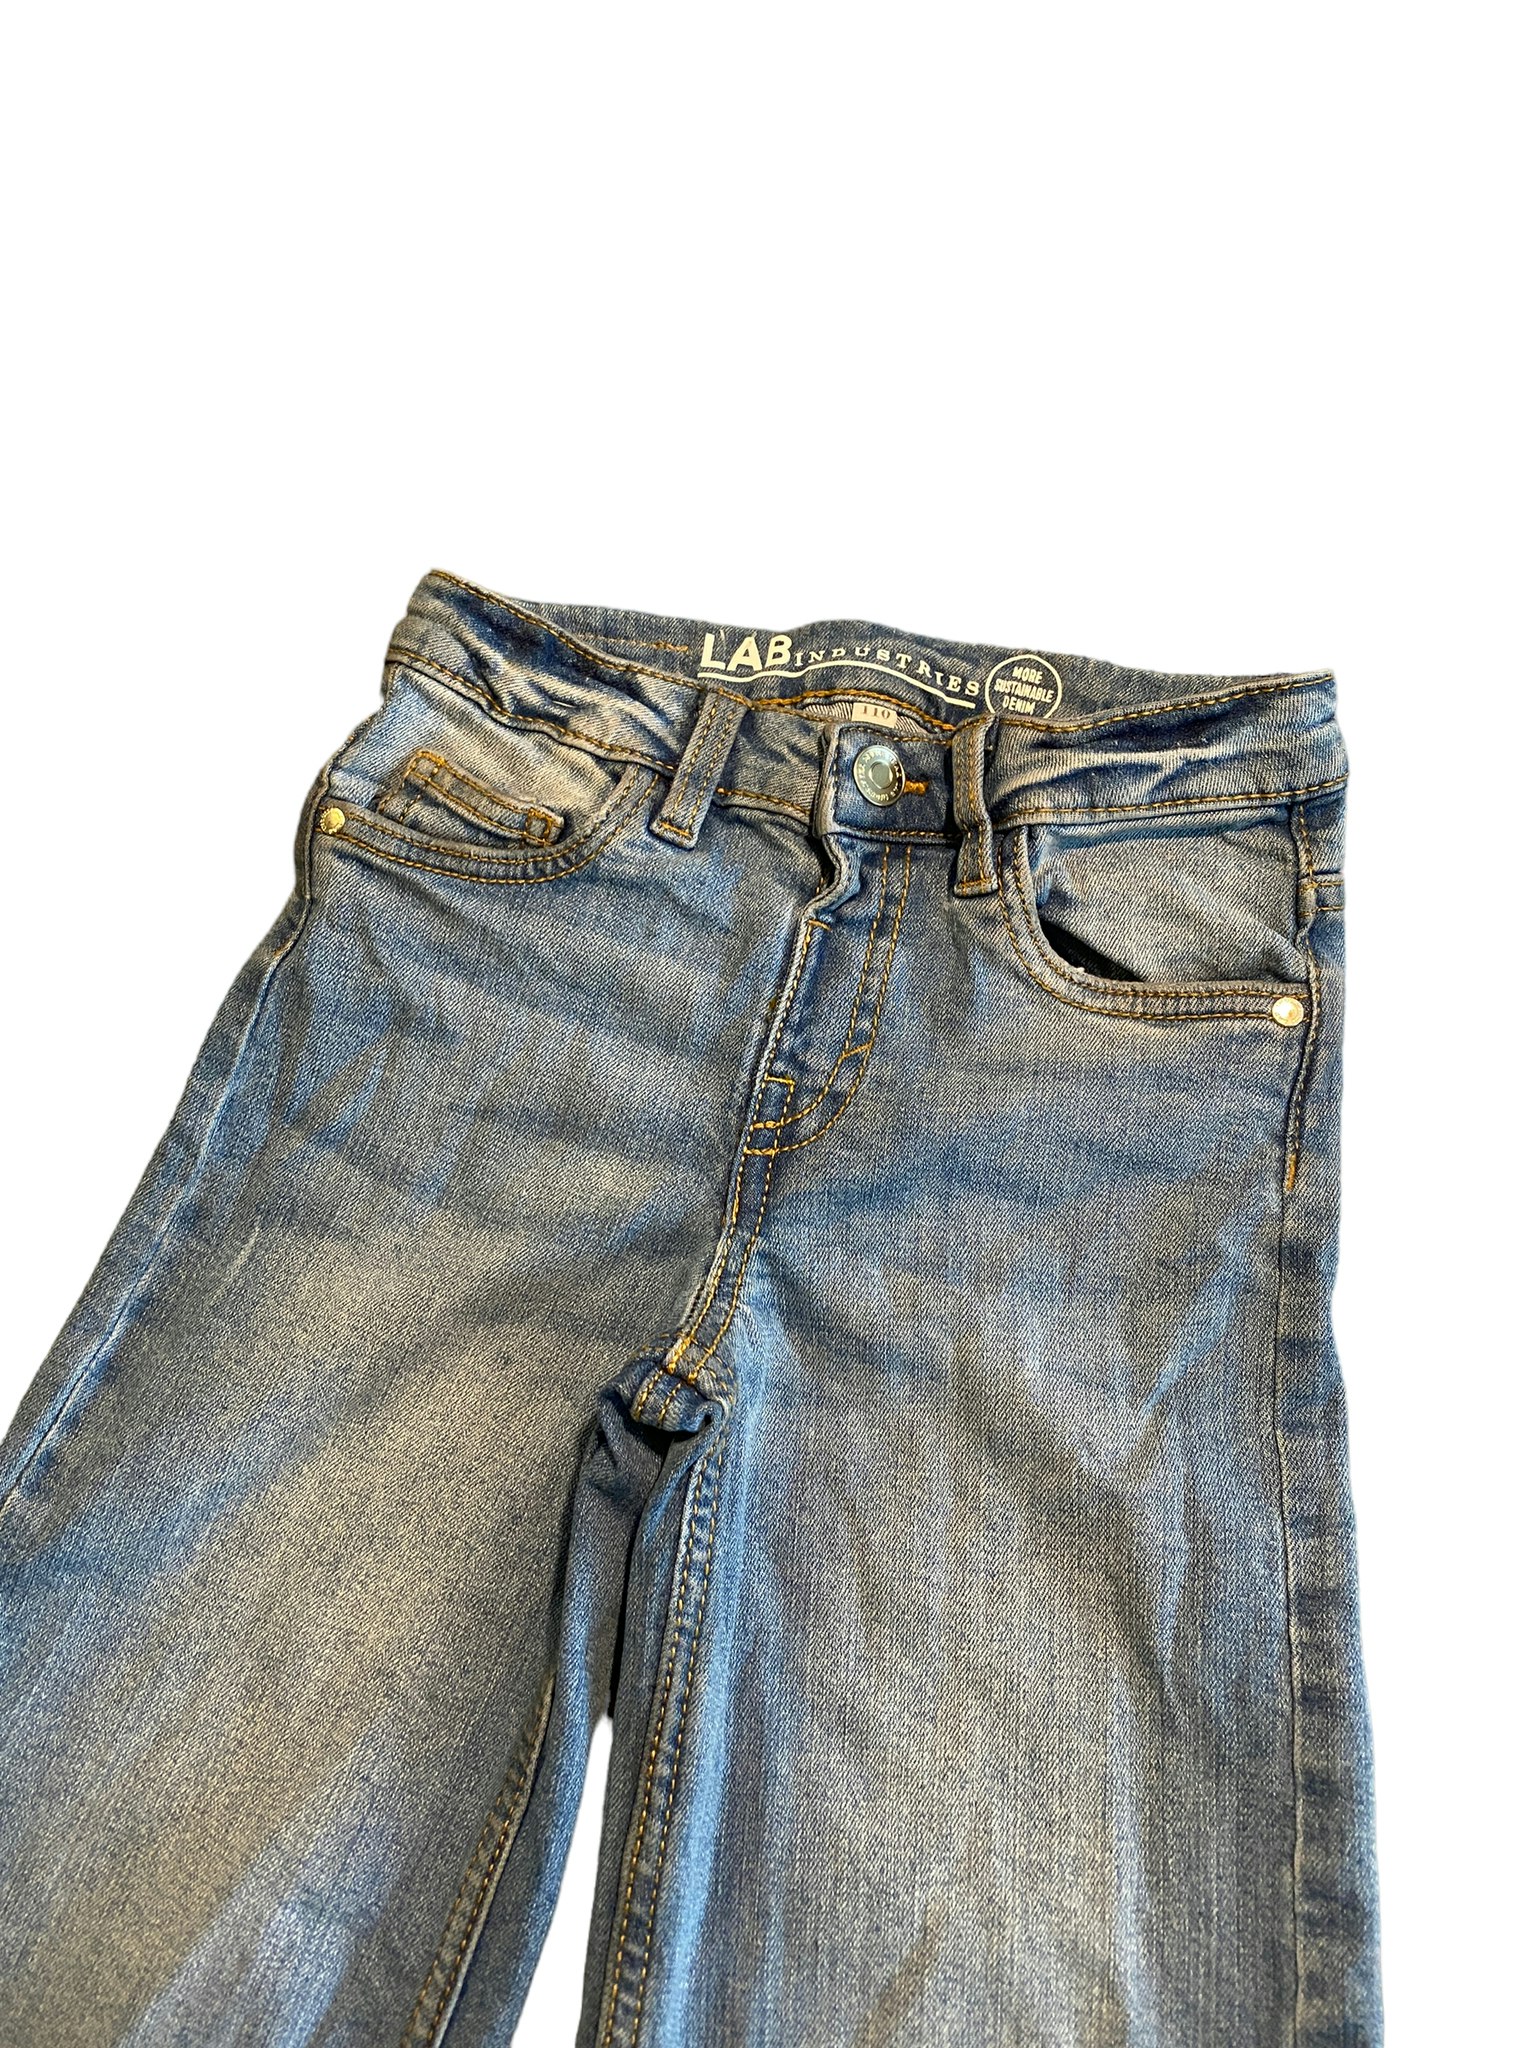 Jeans med vida ben, KappAhl Lab Industries, stl 110